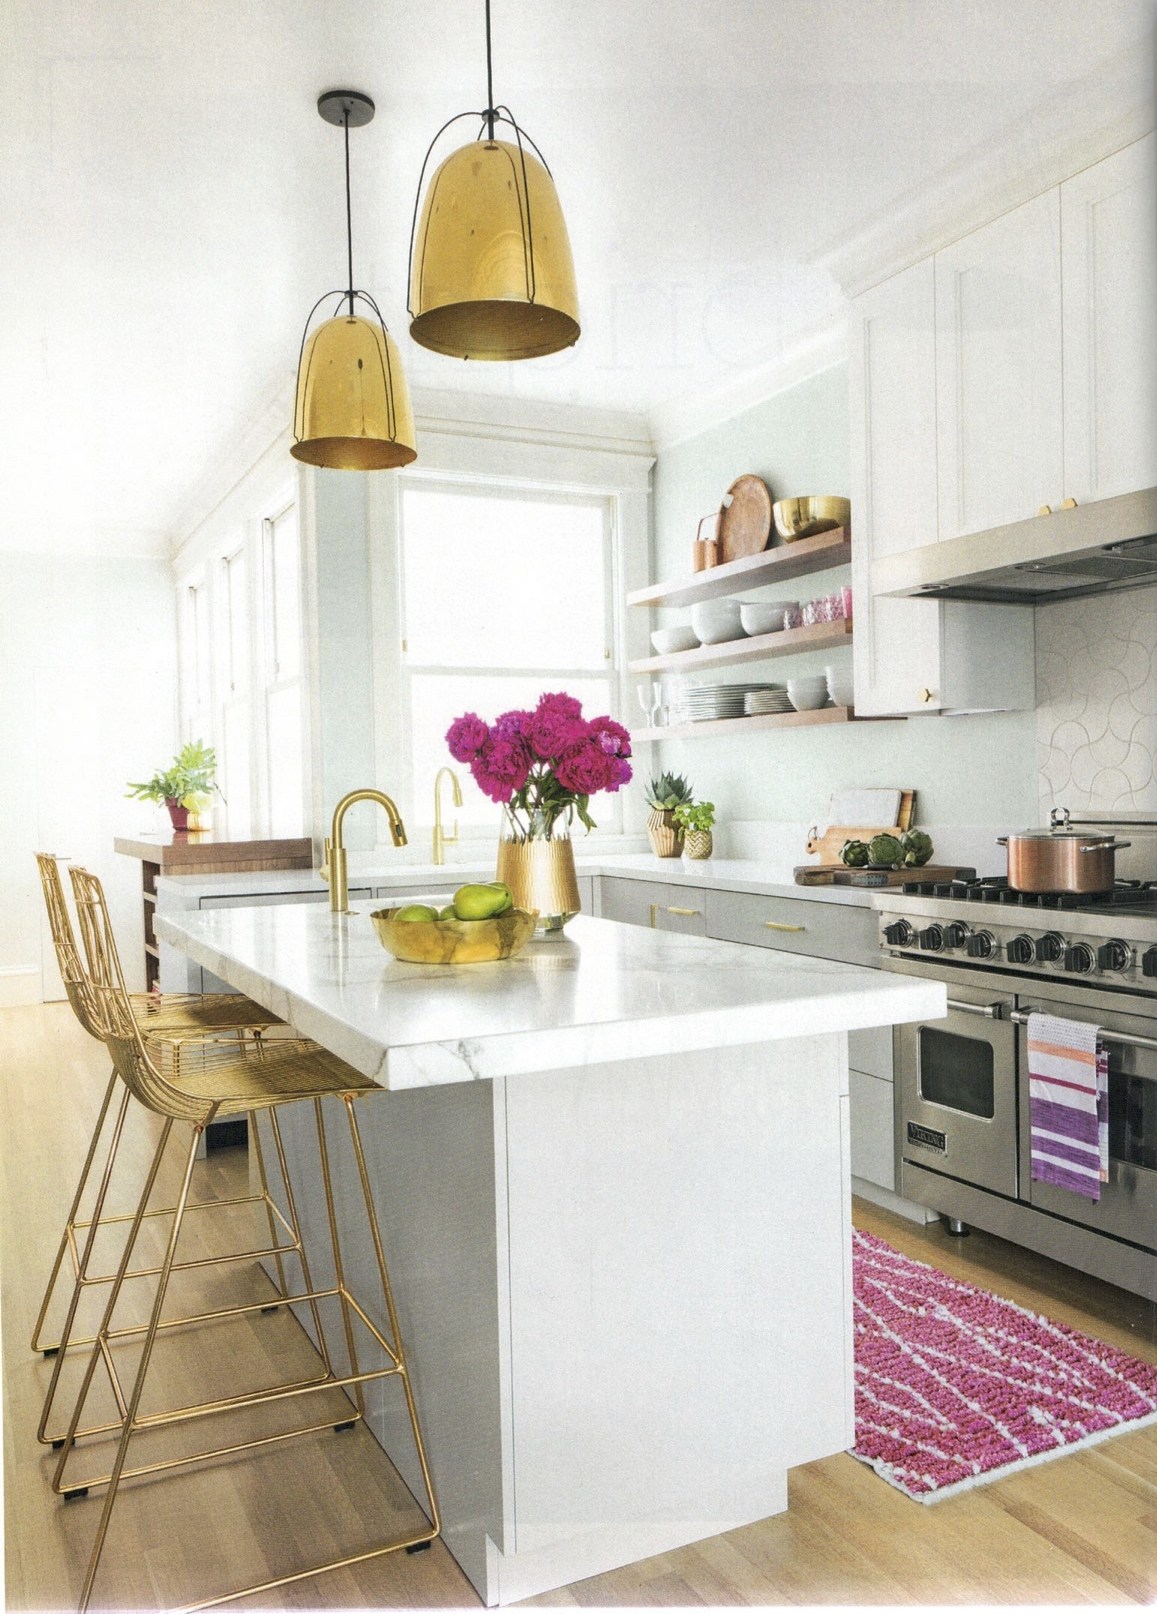 Phòng bếp này sử dụng tấm thảm trải sàn màu hồng để phân vùng tự nhiên giữa khu vực nấu nướng và đảo bếp. Thêm một lọ hoa sắc màu tương đồng là đủ để tạo nên một cái nhìn hoàn hảo.